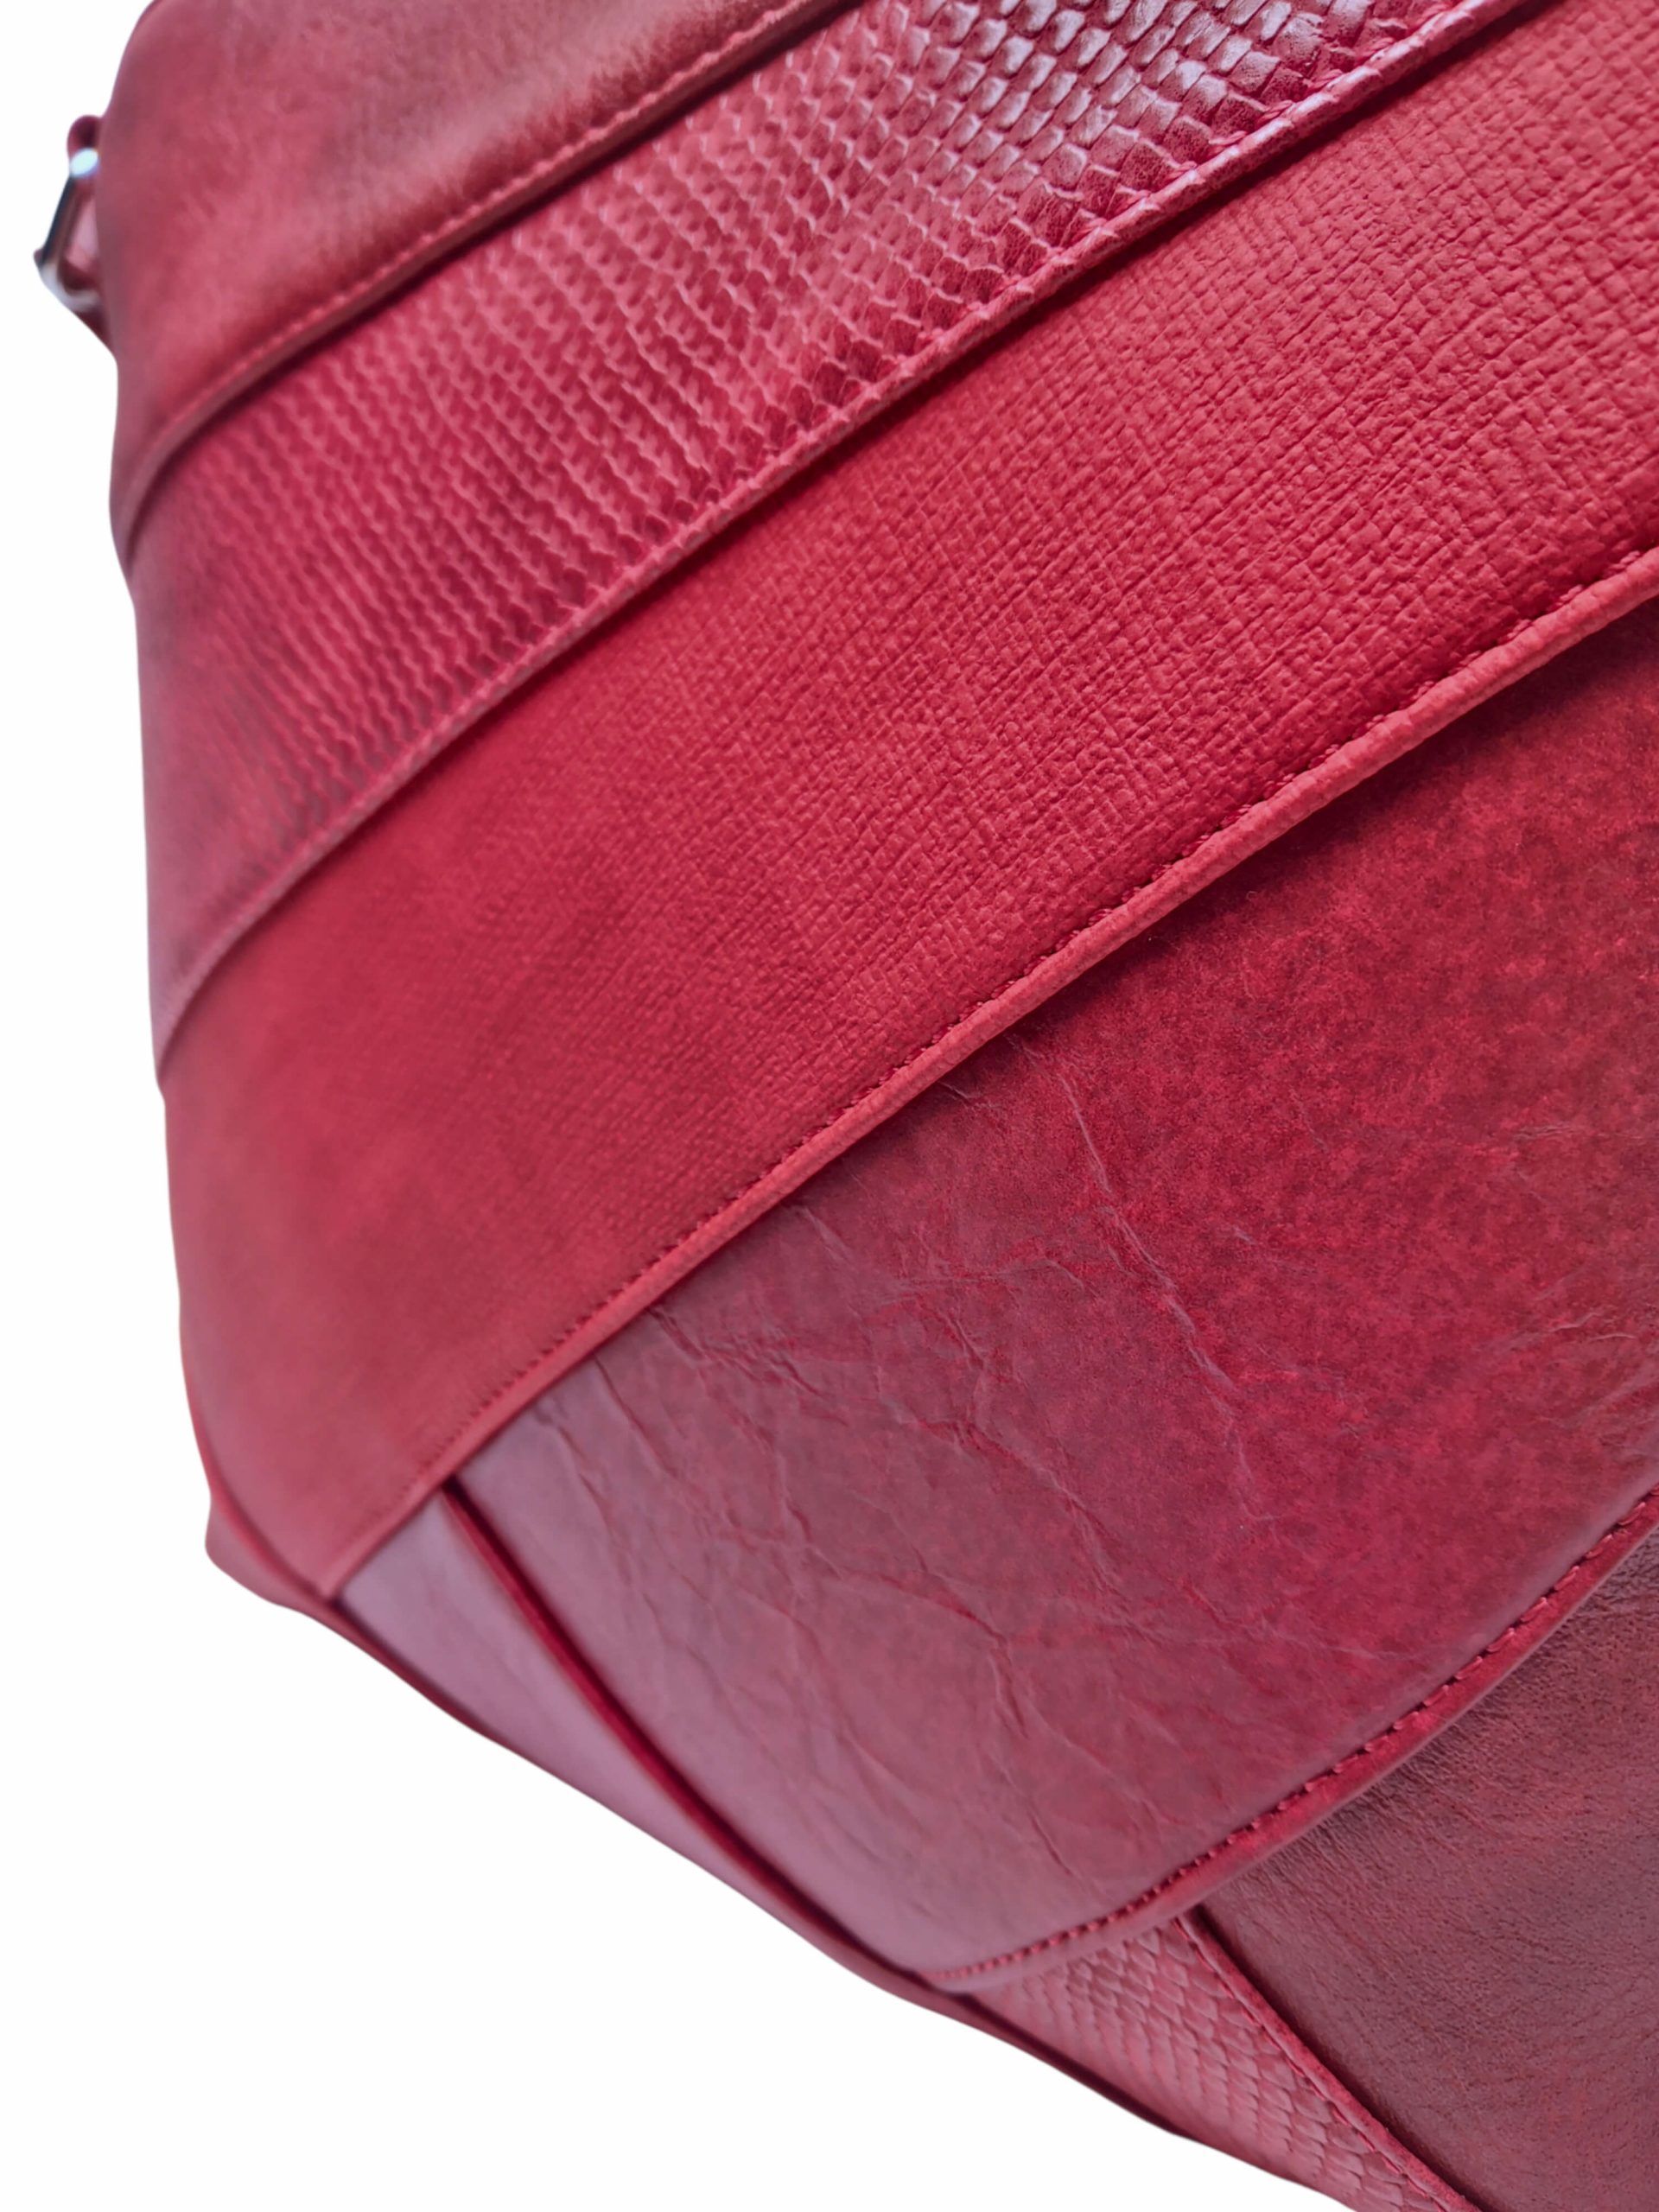 Tmavě červená crossbody kabelka s šikmými vzory, Tapple, H17381, detail crossbody kabelky